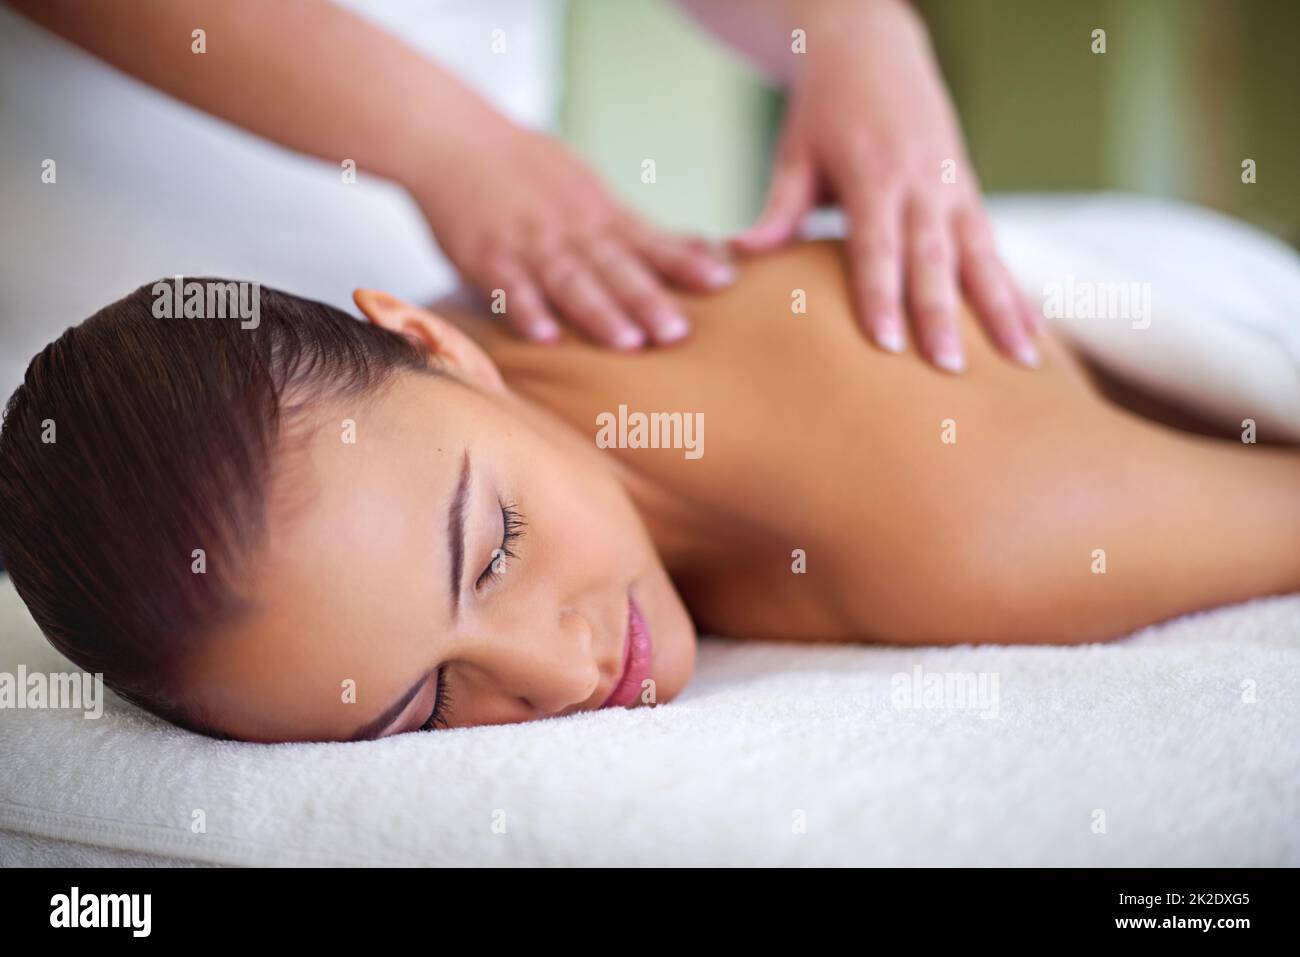 Lasciandole andare via le sue preoccupazioni. Scatto di una giovane donna che si gode un massaggio alla schiena in una spa. Foto Stock